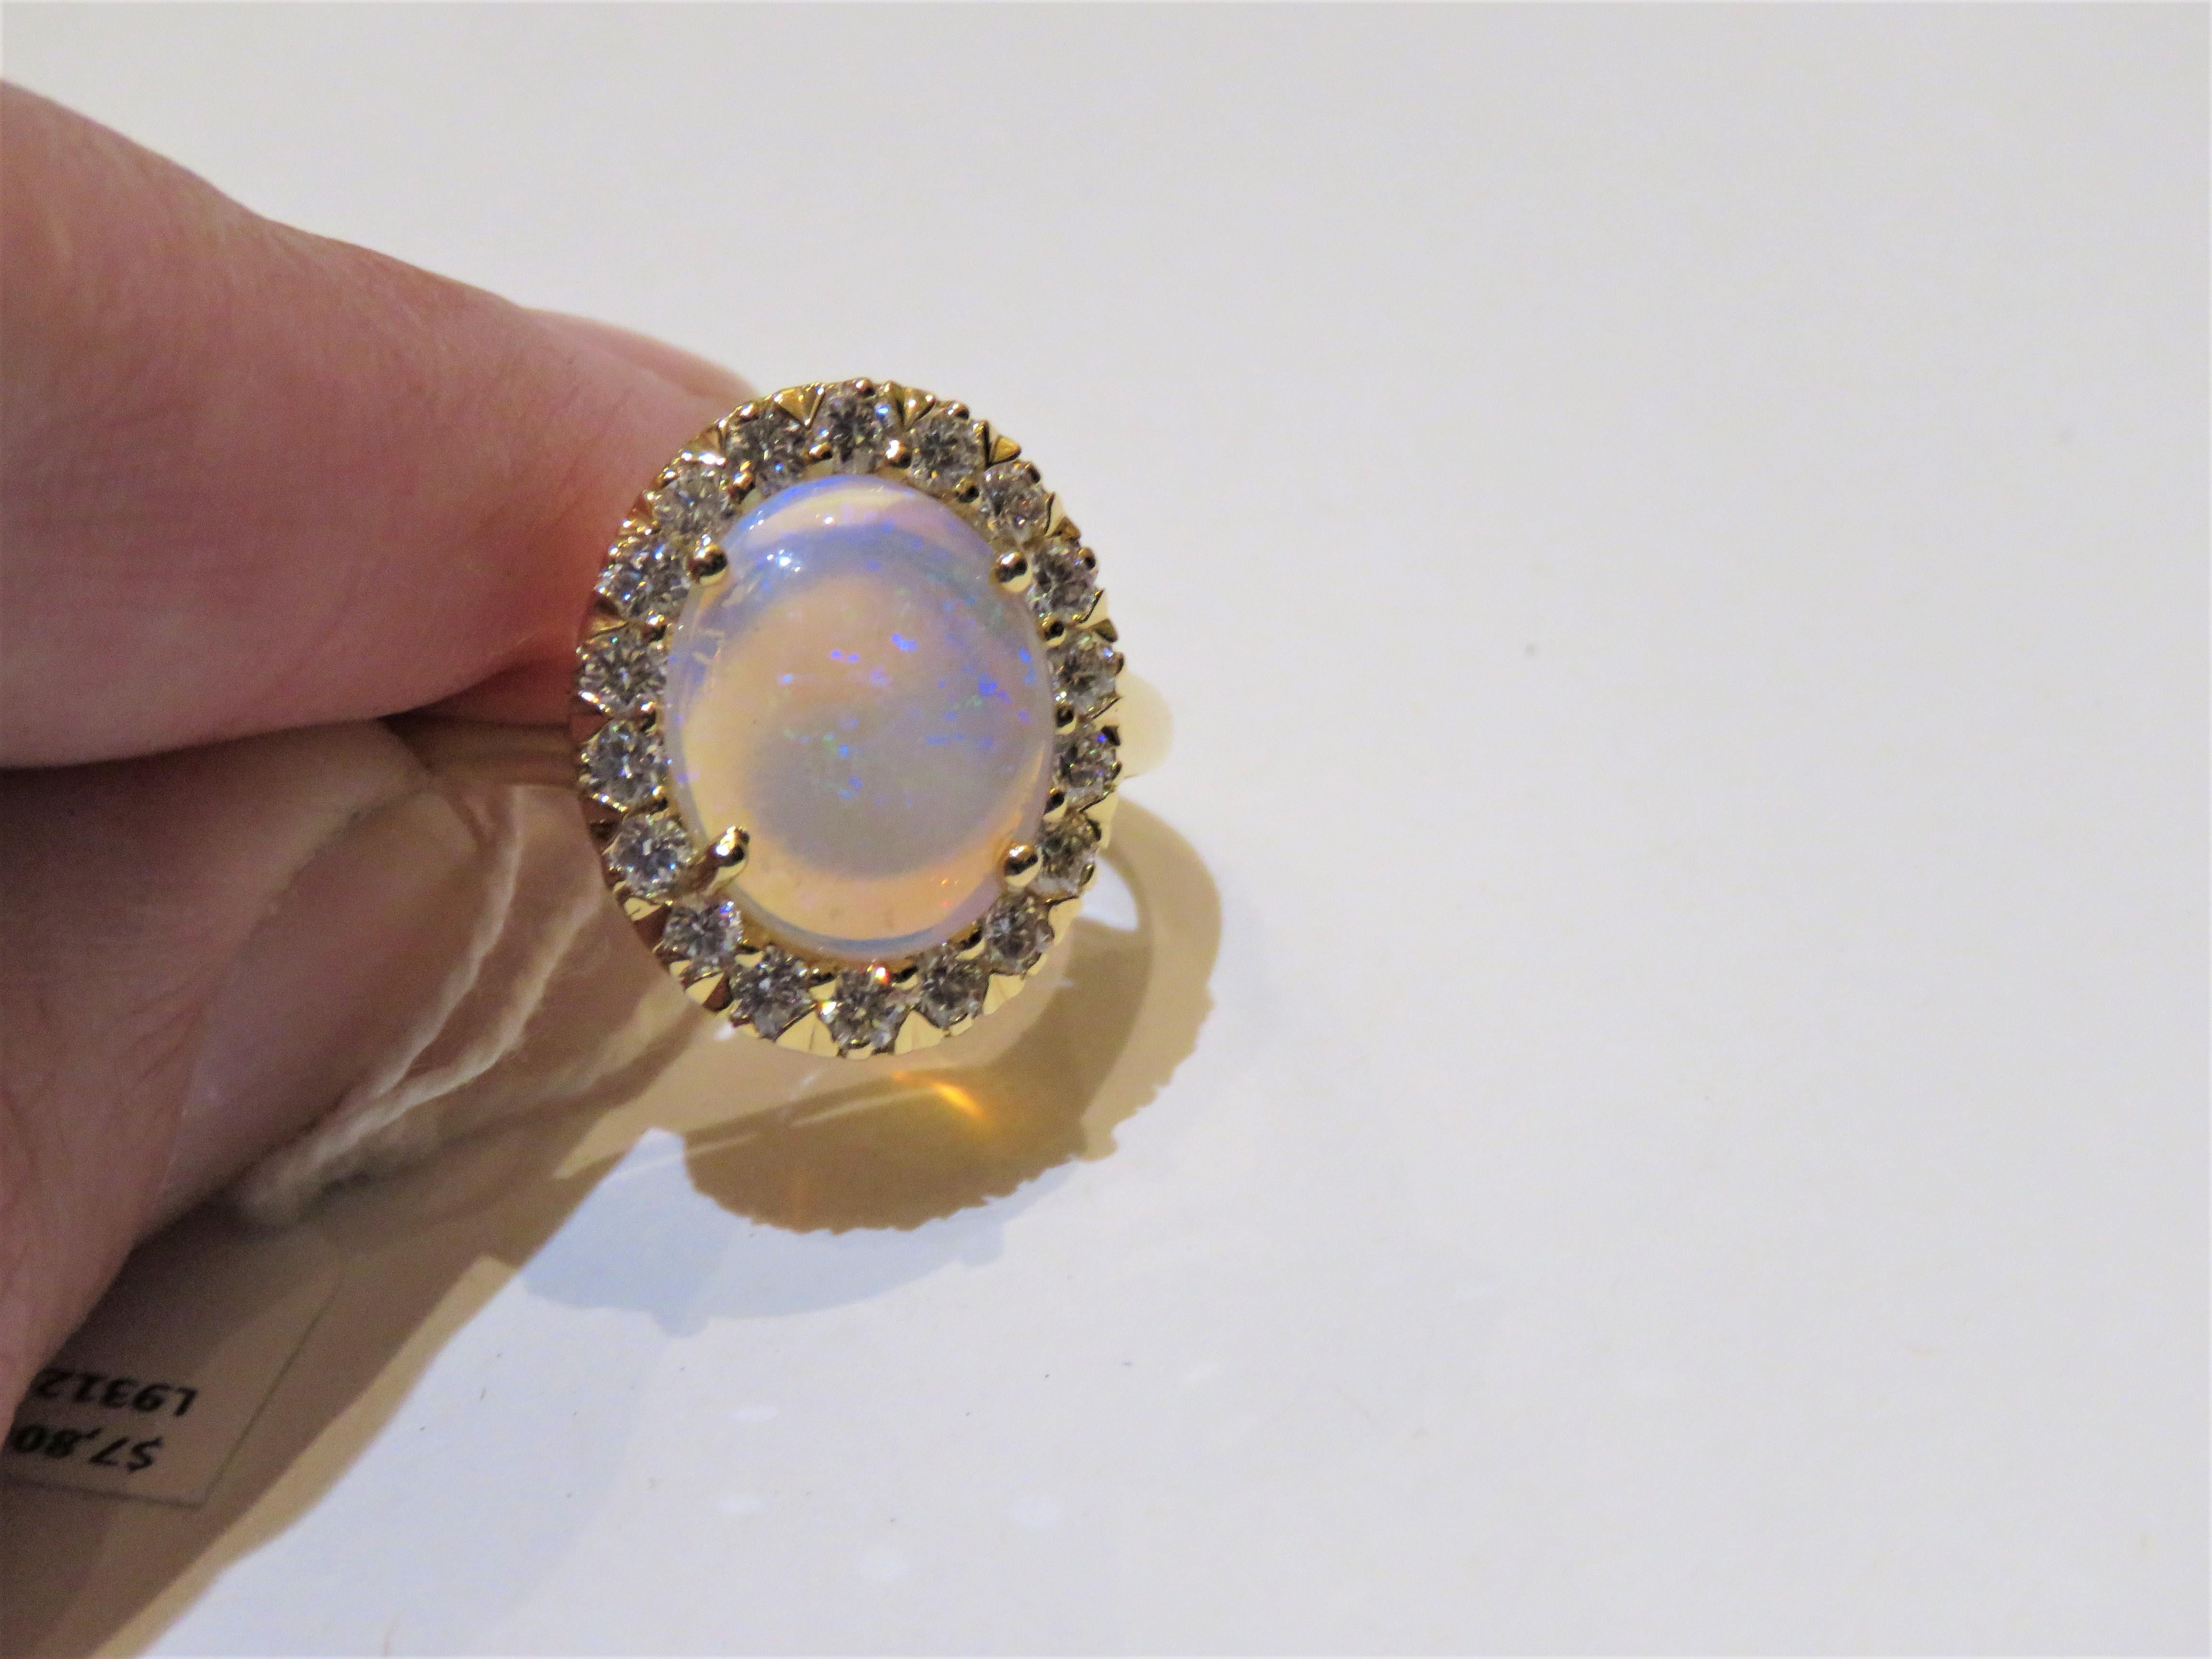 Das folgende Element, das wir anbieten, ist eine seltene wichtige Radiant 18KT Gold Large Fancy Fiery White Opal Diamond Ring. Der Ring besteht aus einem LARGE Gorgeous Fancy White Ethiopian Opal, umgeben von einem schönen Fancy umgeben Halo von